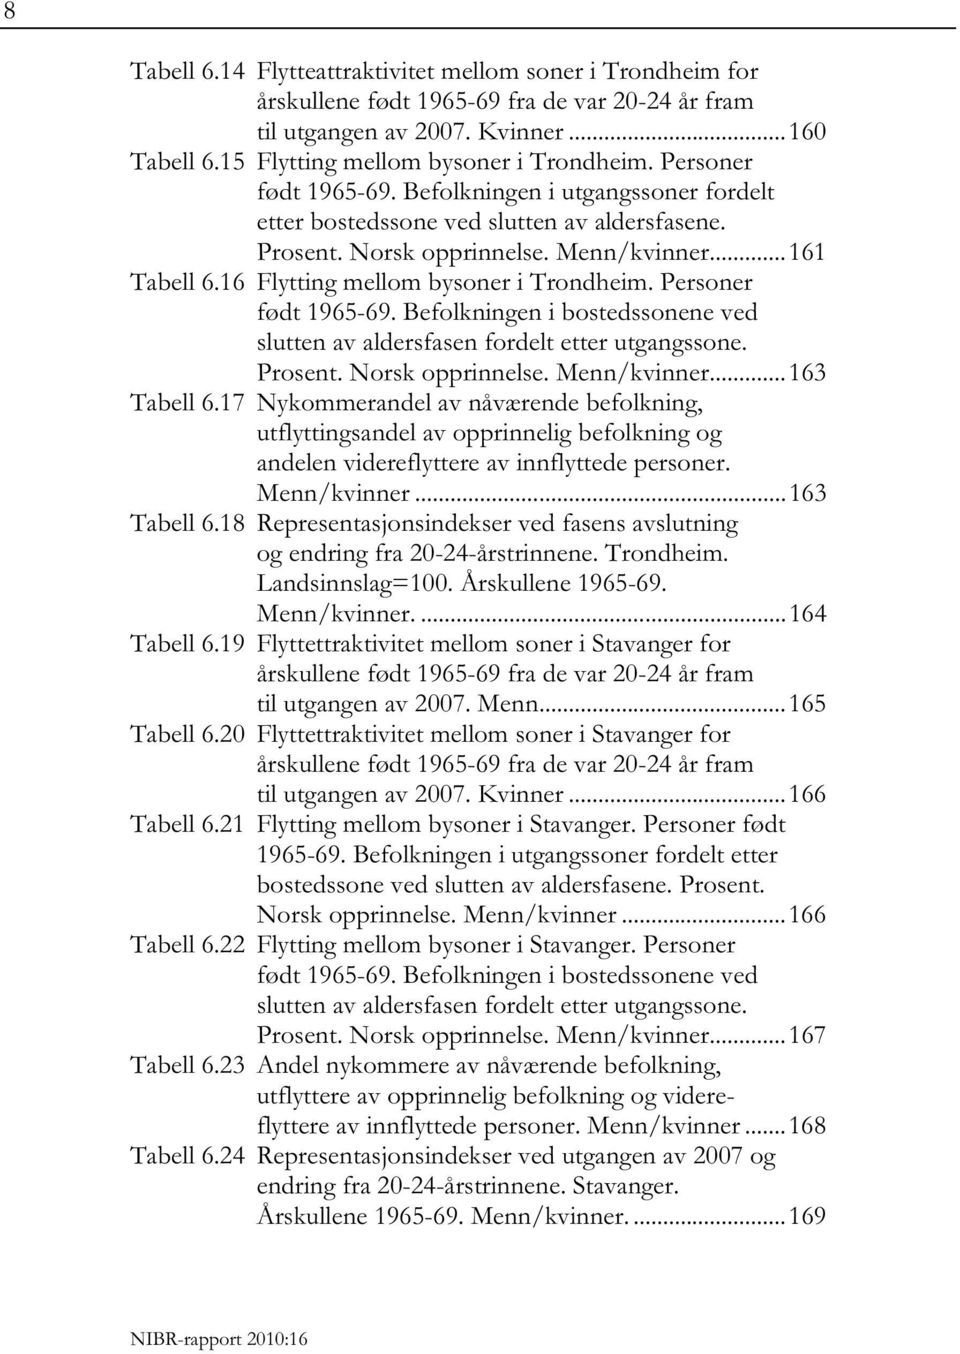 16 Flytting mellom bysoner i Trondheim. Personer født 1965-69. Befolkningen i bostedssonene ved slutten av aldersfasen fordelt etter utgangssone. Prosent. Norsk opprinnelse. Menn/kvinner.